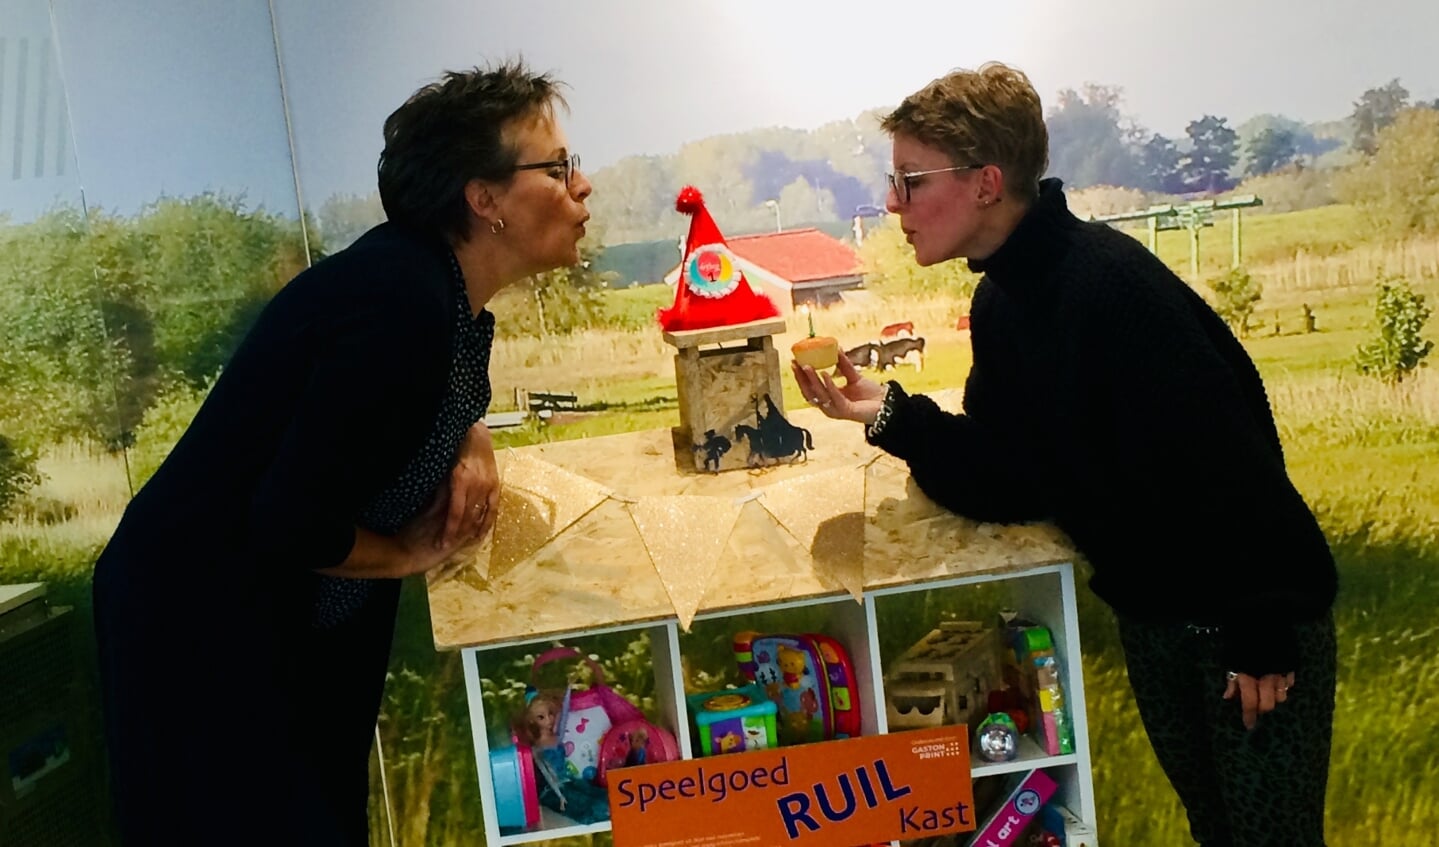 Moniek en Petra, van de bibliotheek blazen samen een kaarsje uit ter gelegenheid van de 1e verjaardag van de speelgoedRUILkast.